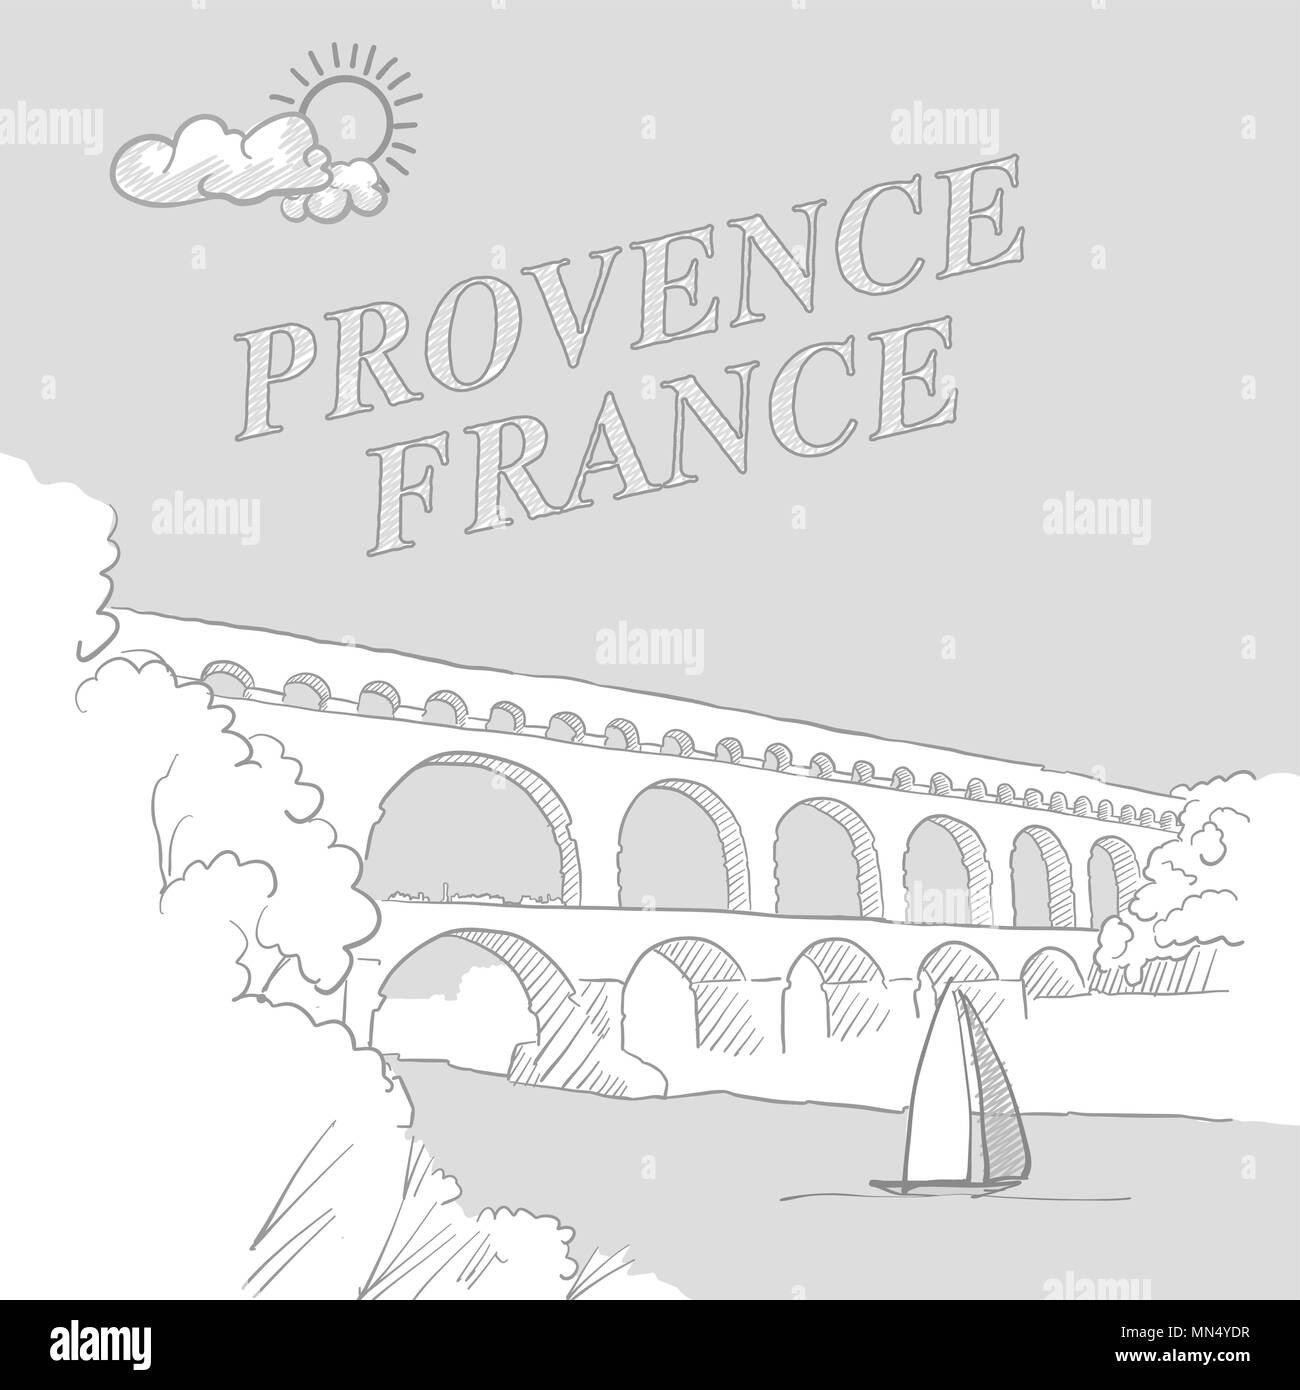 Provenza, Francia travel marketing coperchio, disegnato a mano disegno vettoriale Illustrazione Vettoriale